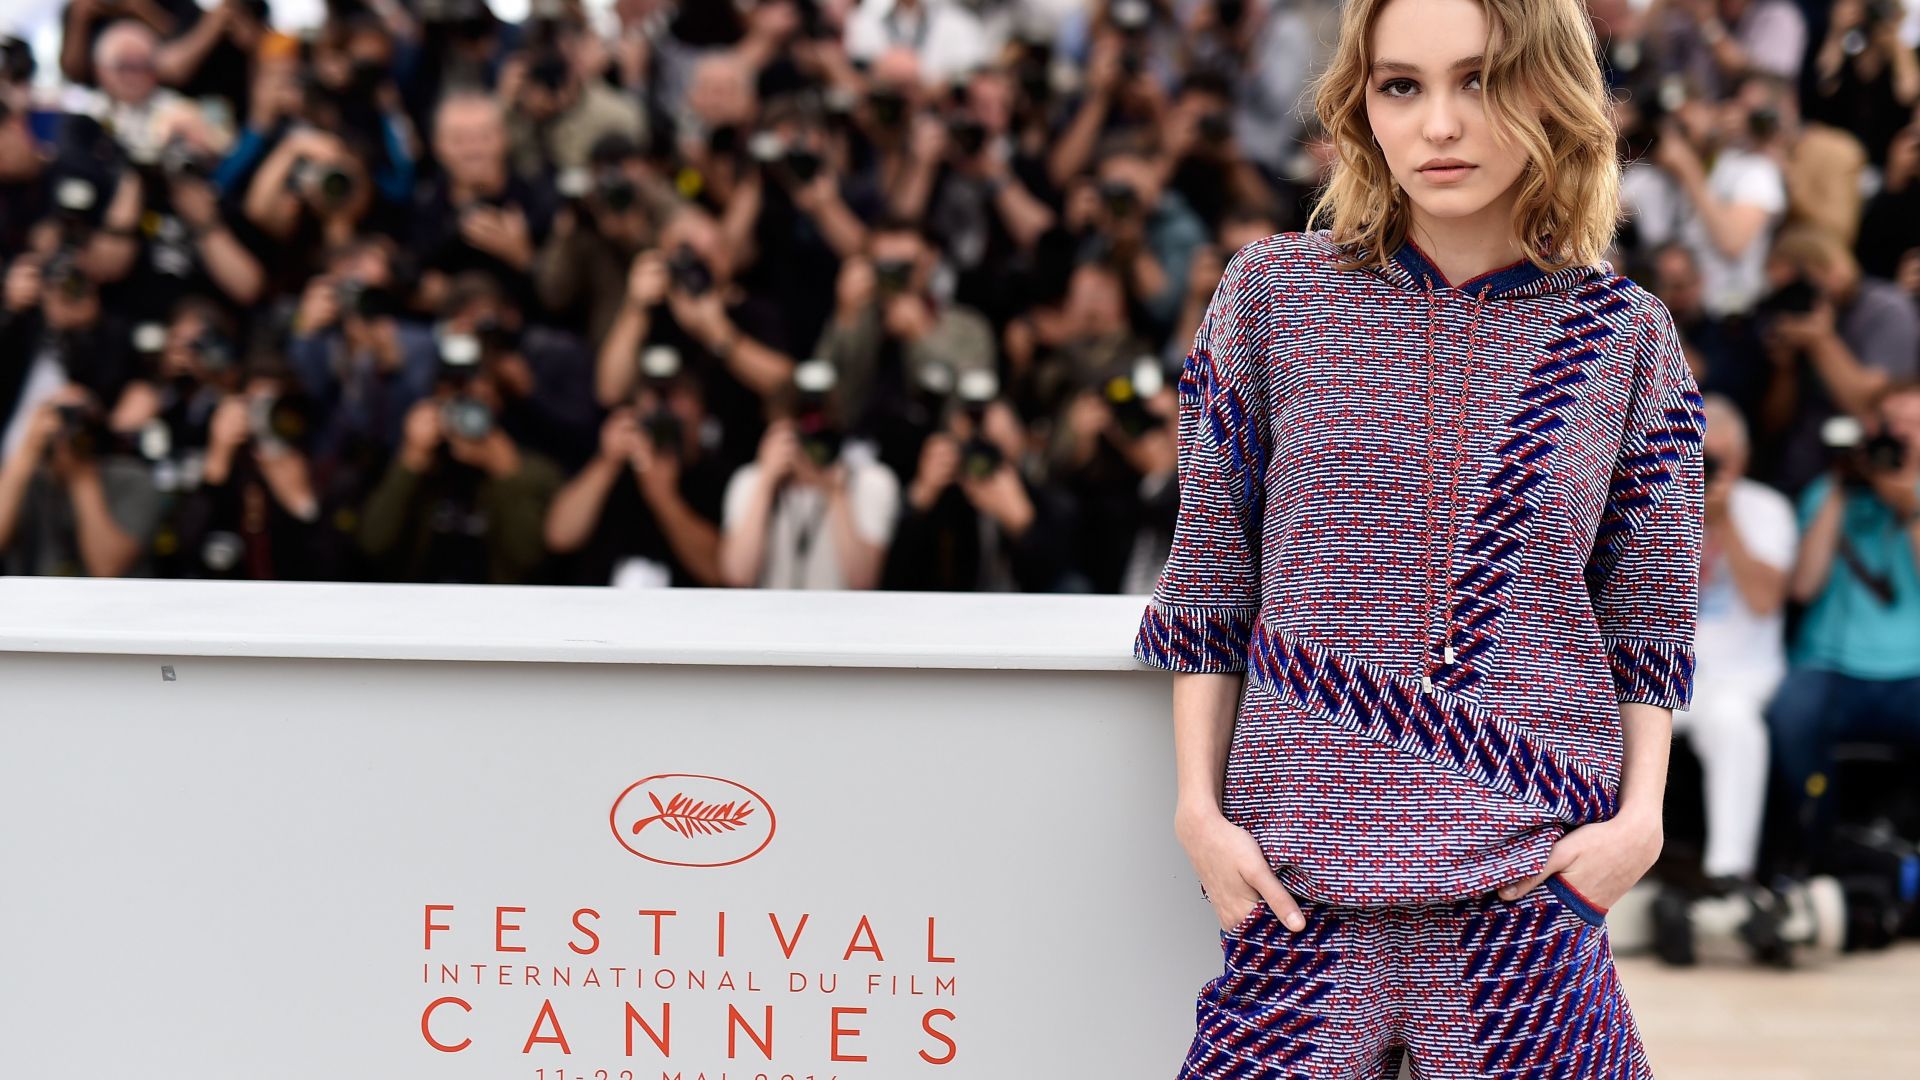 Лили-Роуз Депп, Каннский кинофестиваль 2016, Lily-Rose Depp, Cannes Film Festival 2016 (horizontal)